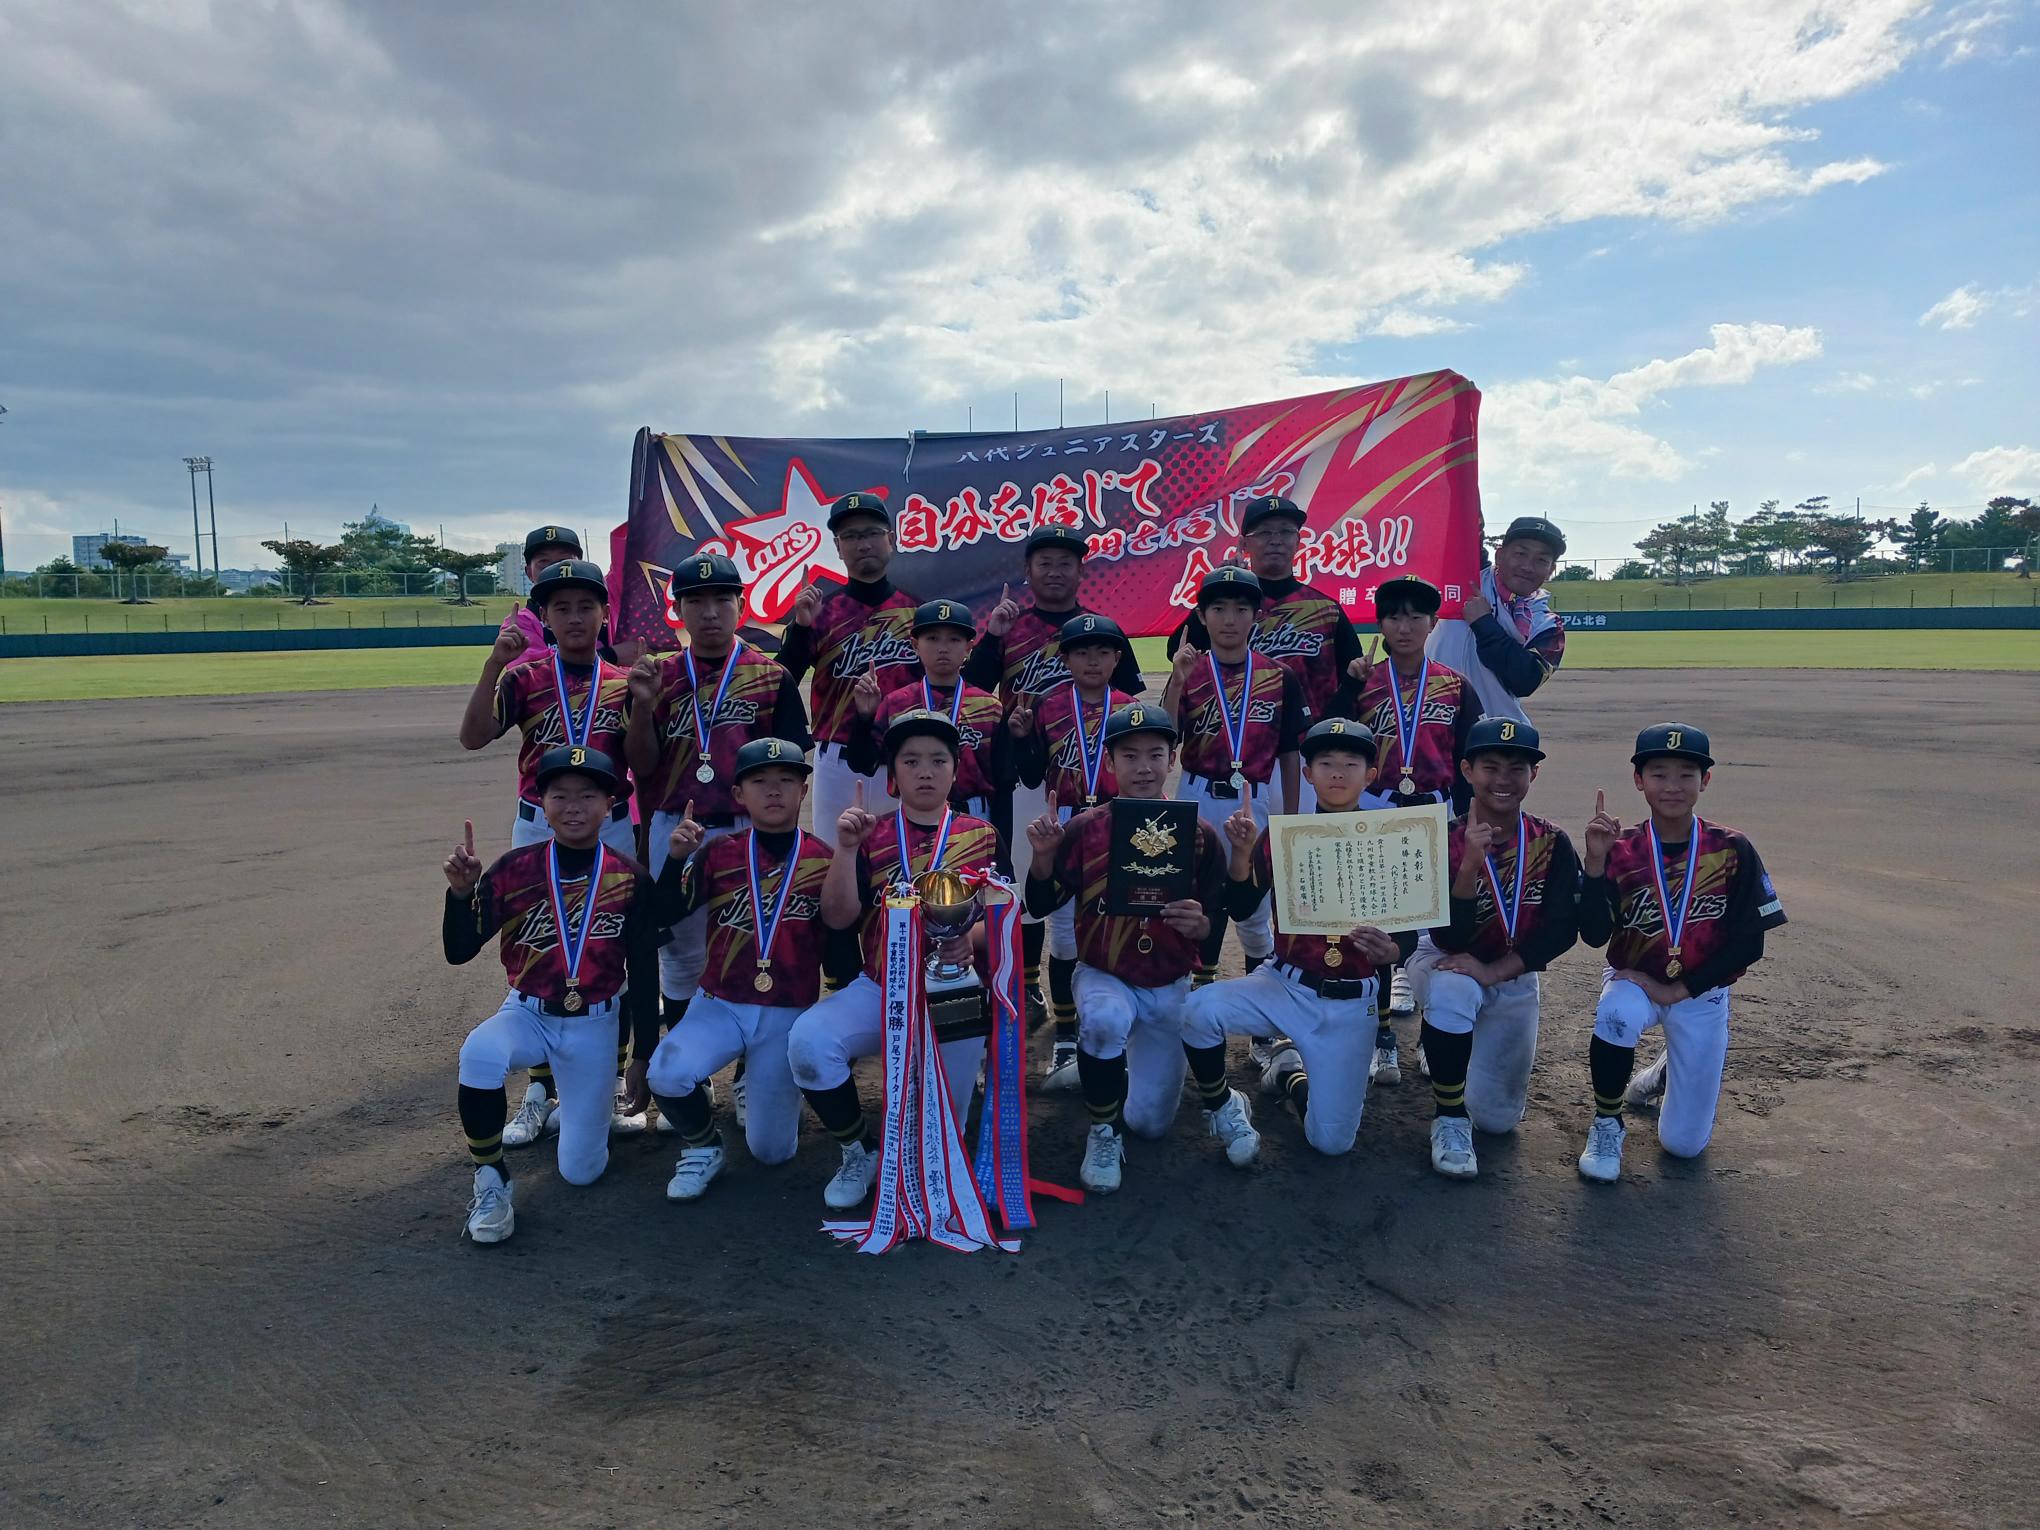 【大会結果】第21回王貞治杯九州学童軟式野球大会